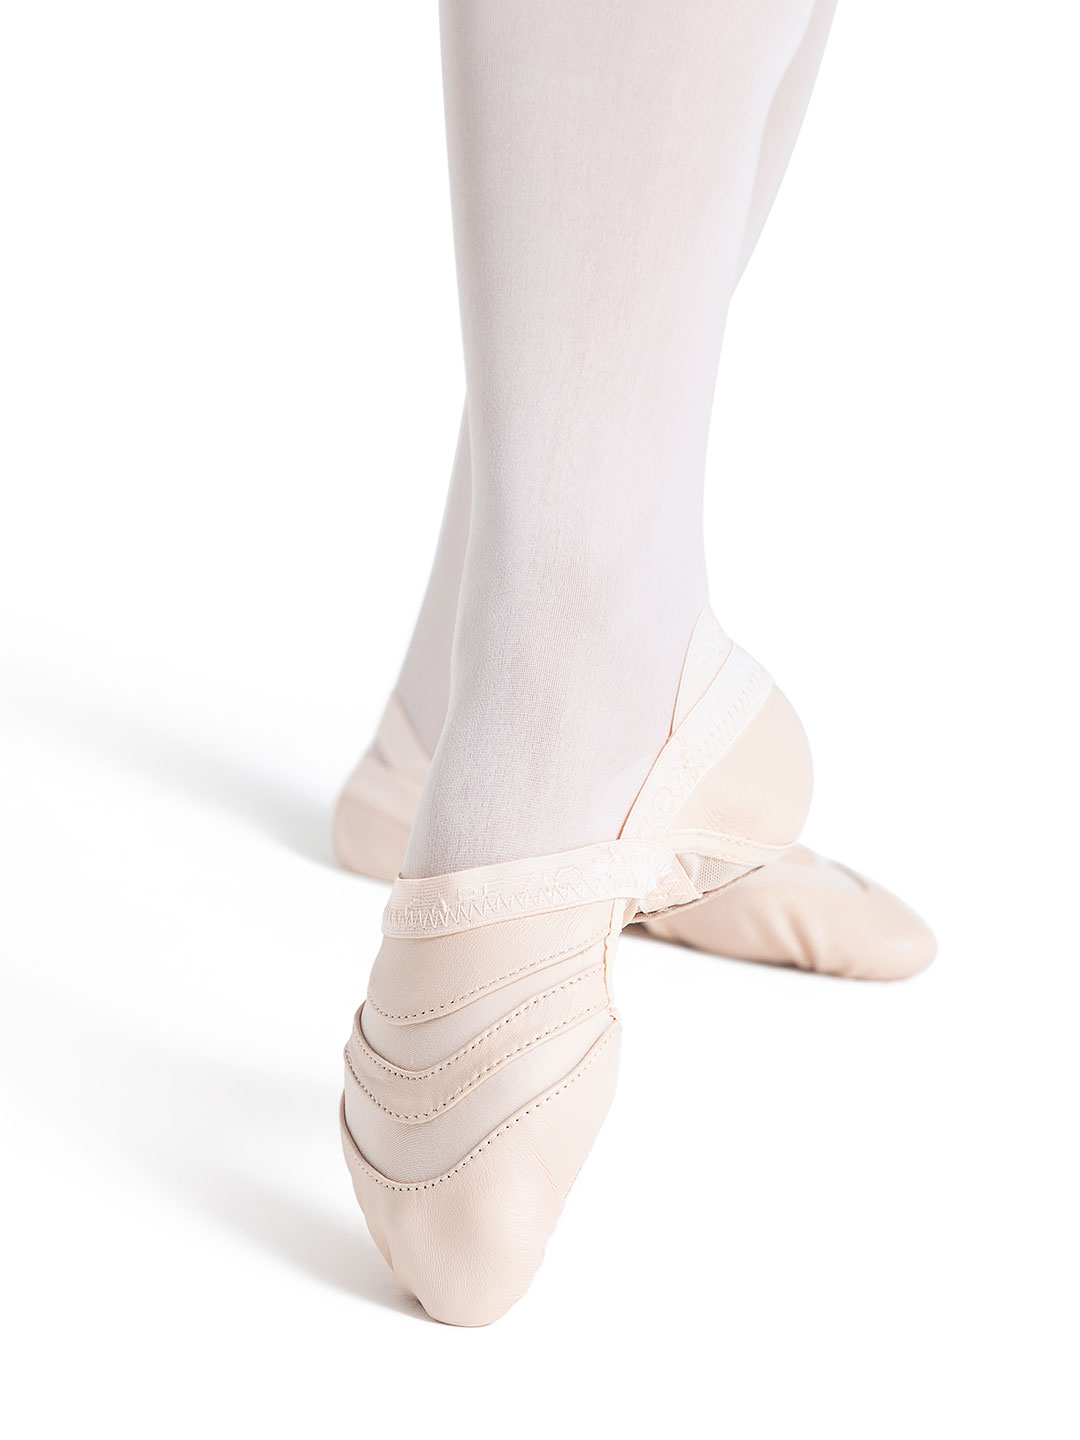 https://www.capezio.com/media/catalog/product/c/a/capezio_freeform_ballet_shoe_light_pink_ff01_base.jpg